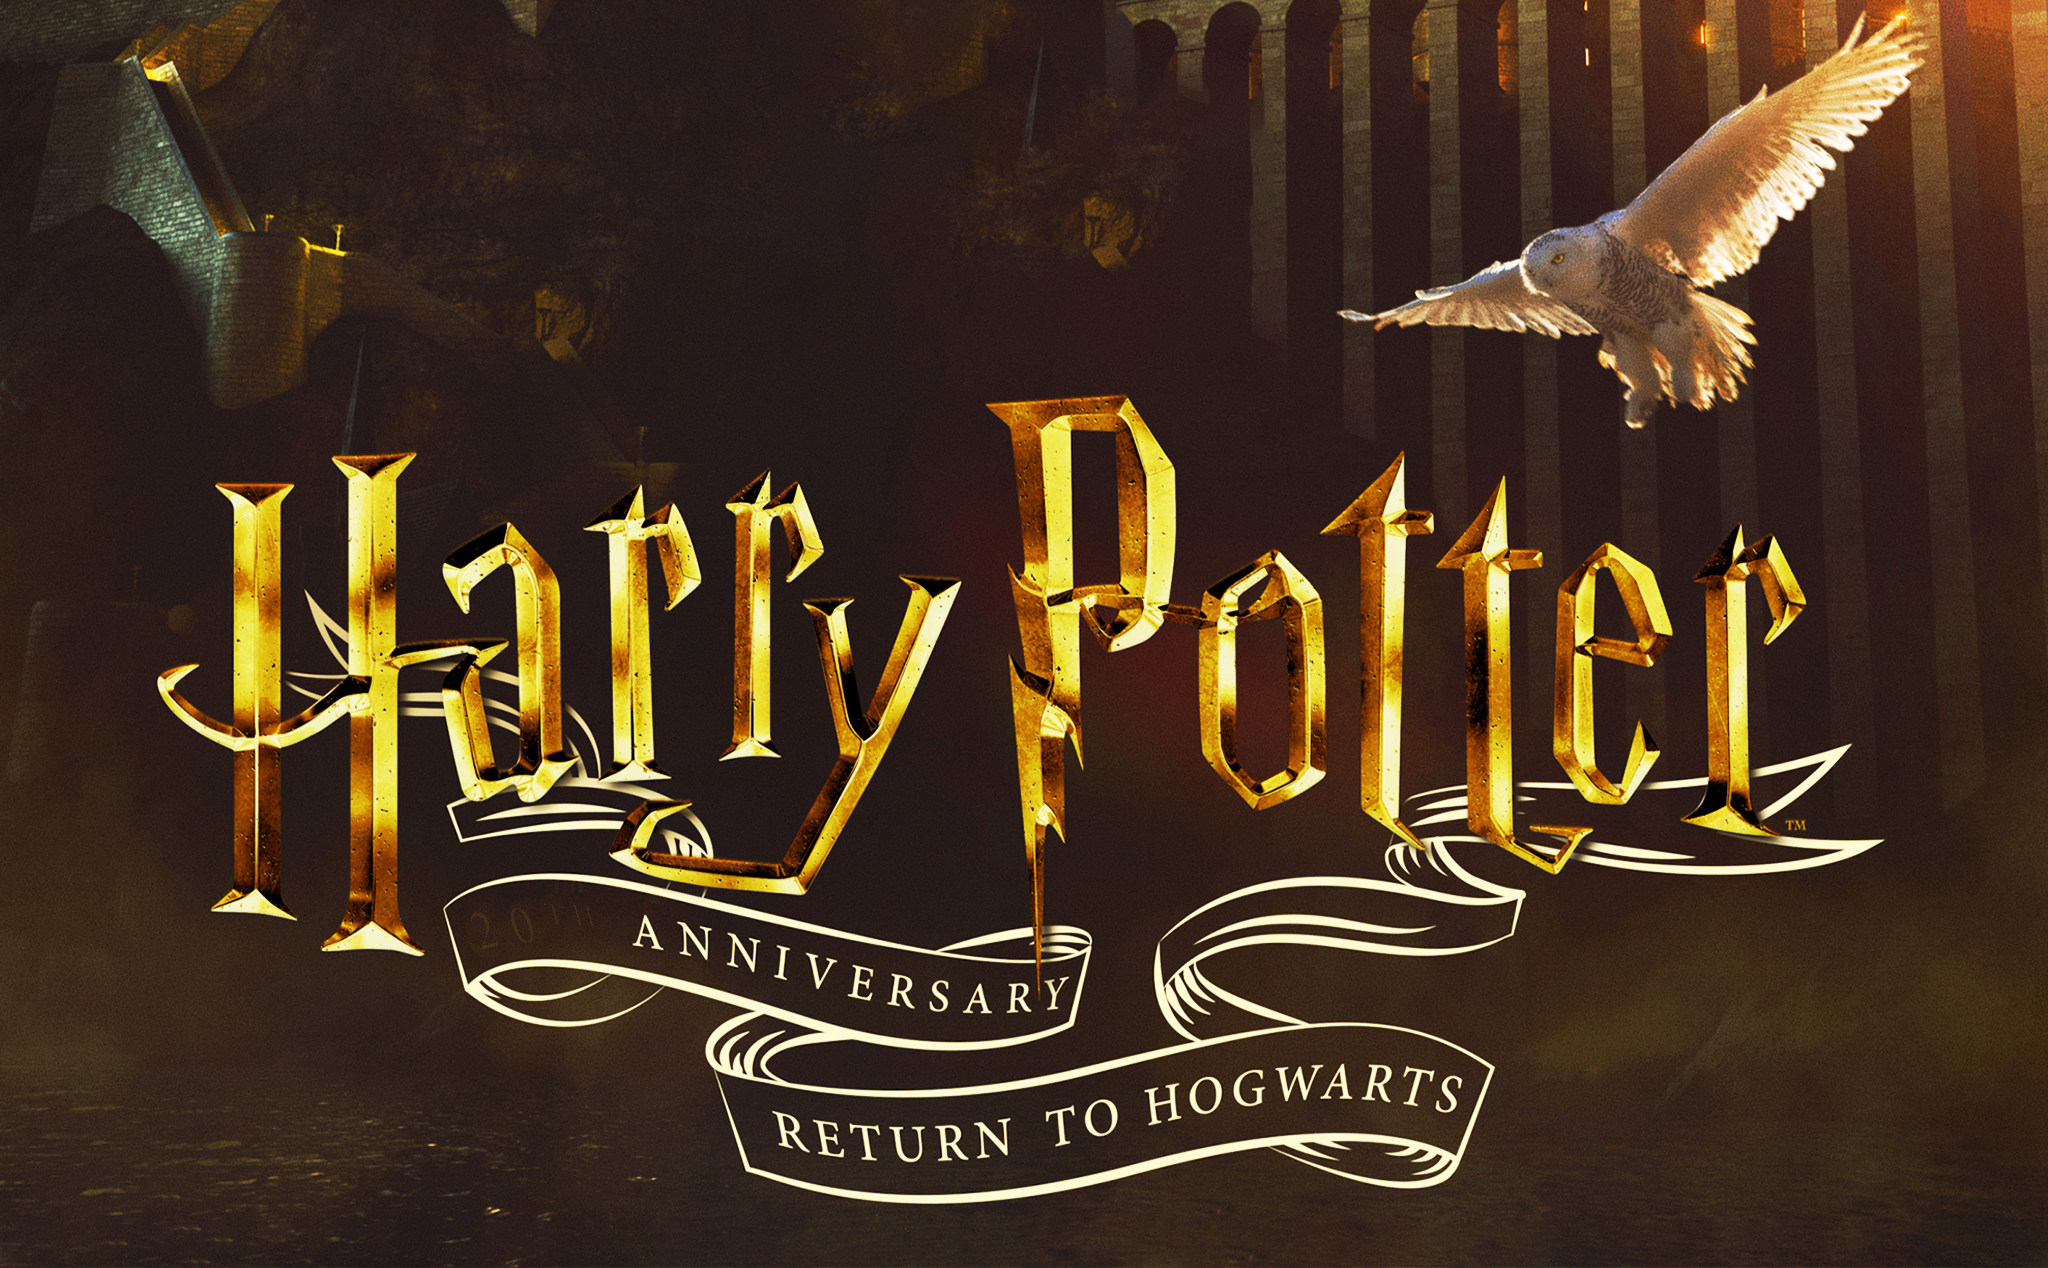 Trang web hâm mộ Harry Potter là nơi hội tụ những fan cứng của bộ phim nổi tiếng này. Trang web này cung cấp cho bạn những thông tin mới nhất, hình ảnh đẹp và những câu chuyện thú vị xoay quanh thế giới Harry Potter. Tại đây, bạn có thể chia sẻ đam mê và kết nối với những người có cùng sở thích.